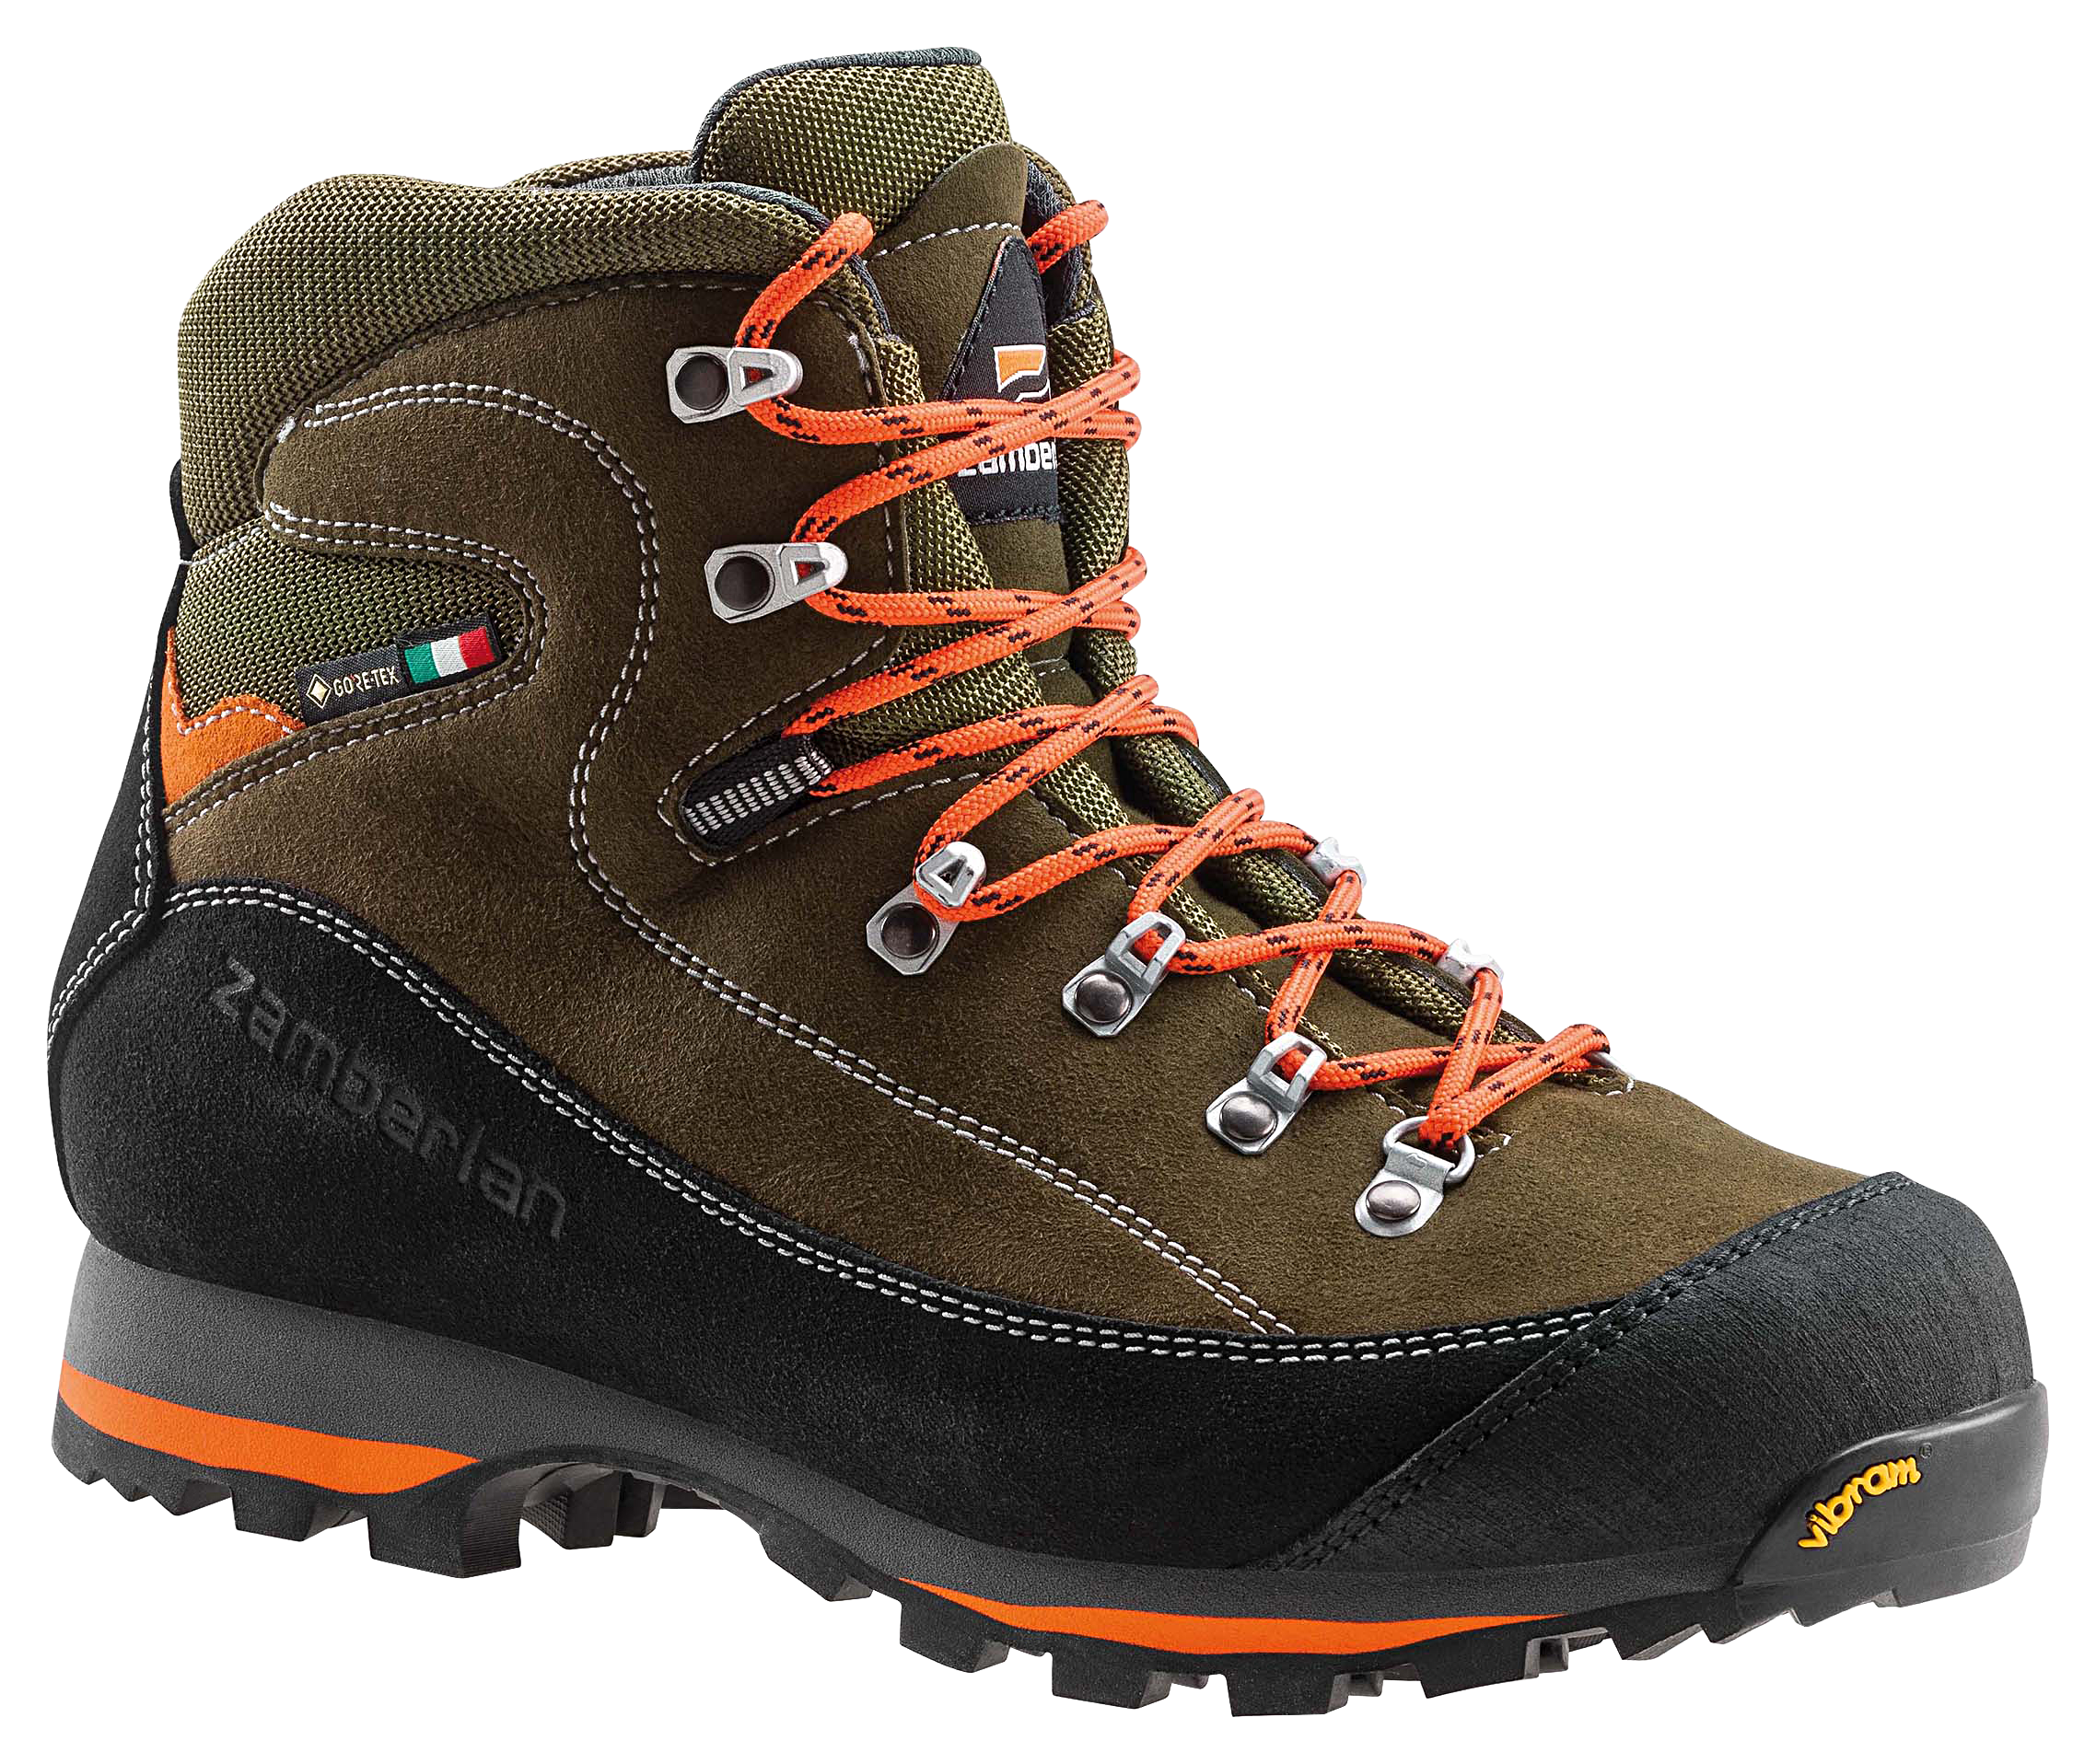 Zamberlan 700 Sierra GTX Waterproof Hunting Boots for Men - Forest - 12M